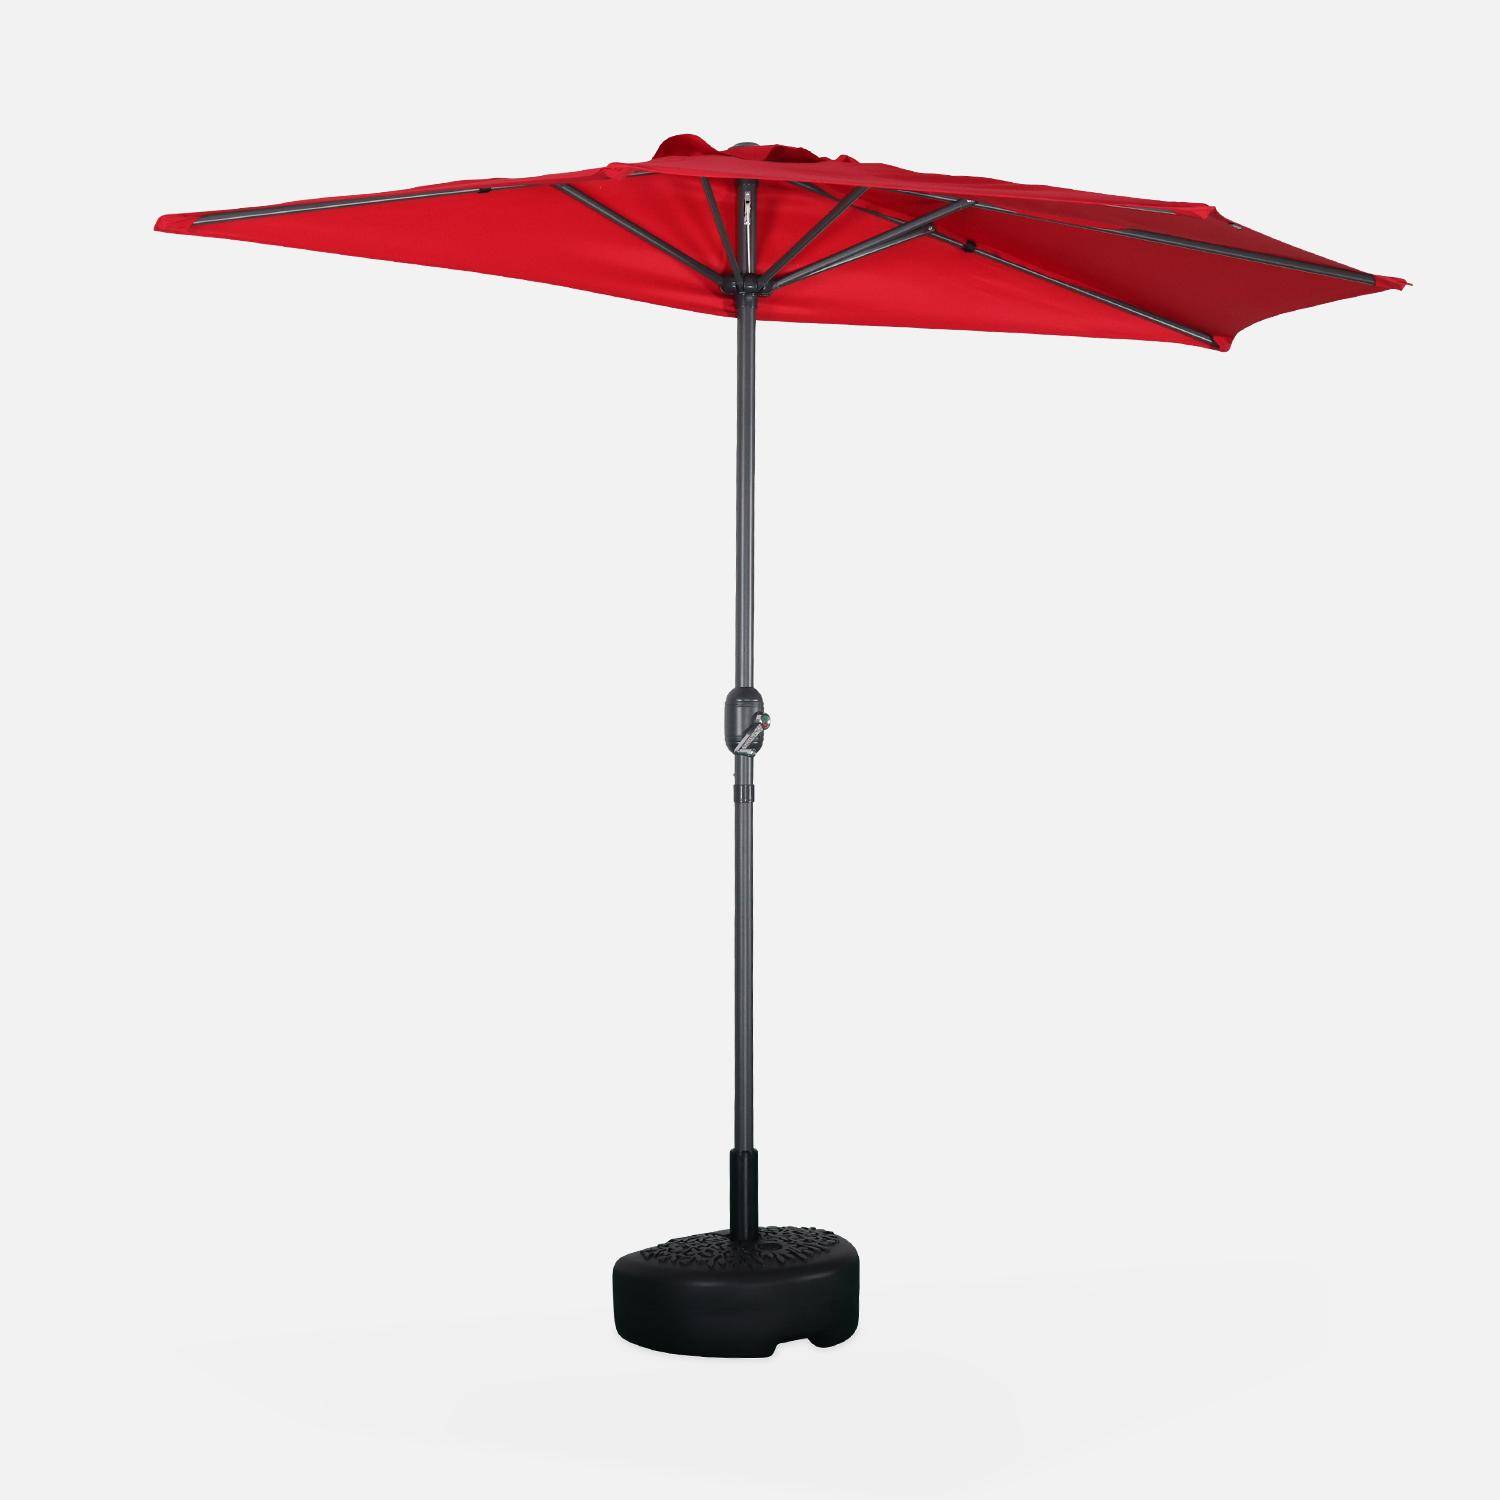  Parasol para balcón Ø250cm  – CALVI – Pequeño parasol recto, mástil en aluminio con manivela, tela color rojo Photo1